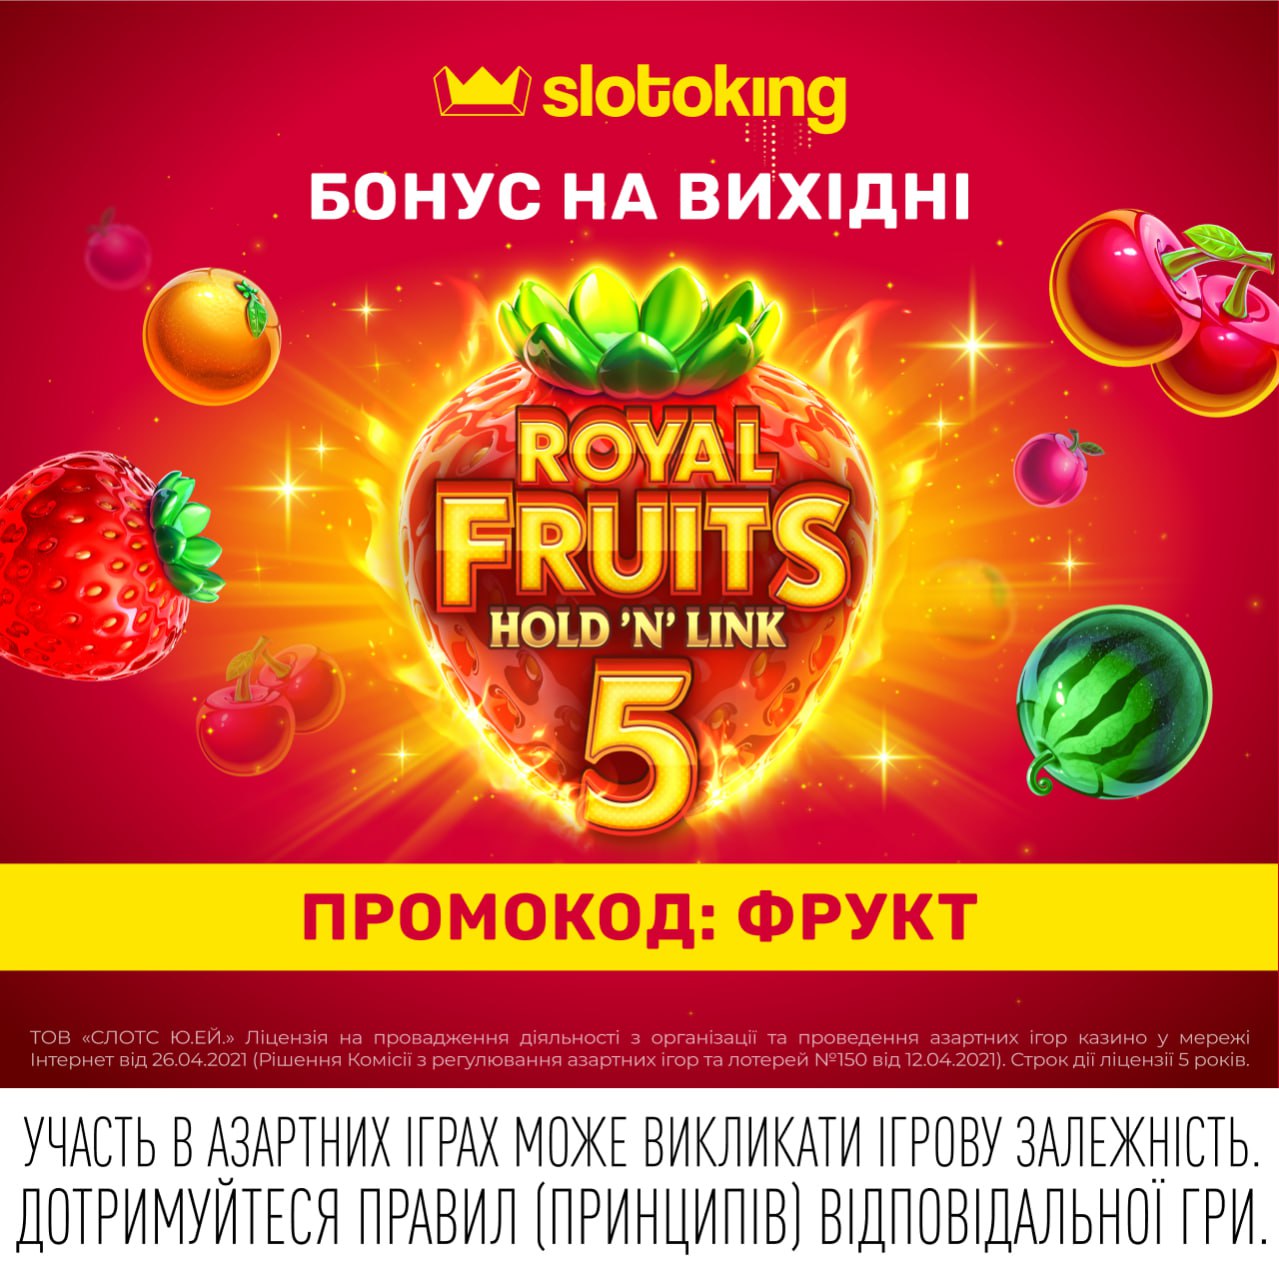 Royal Fruits 5 Hold'N'Link